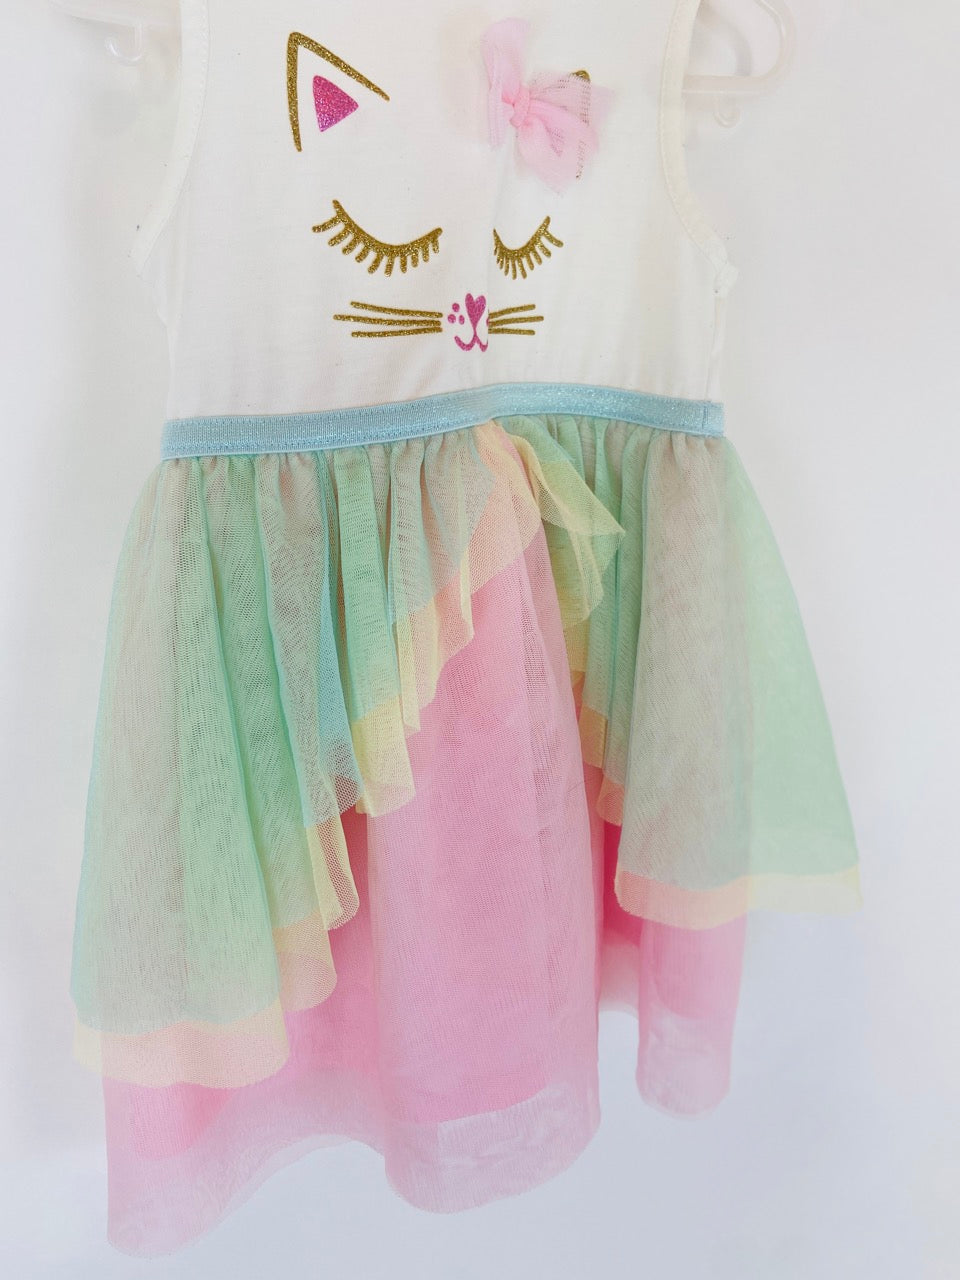 Kitty Cat TuTu Dress - 2T & 3T